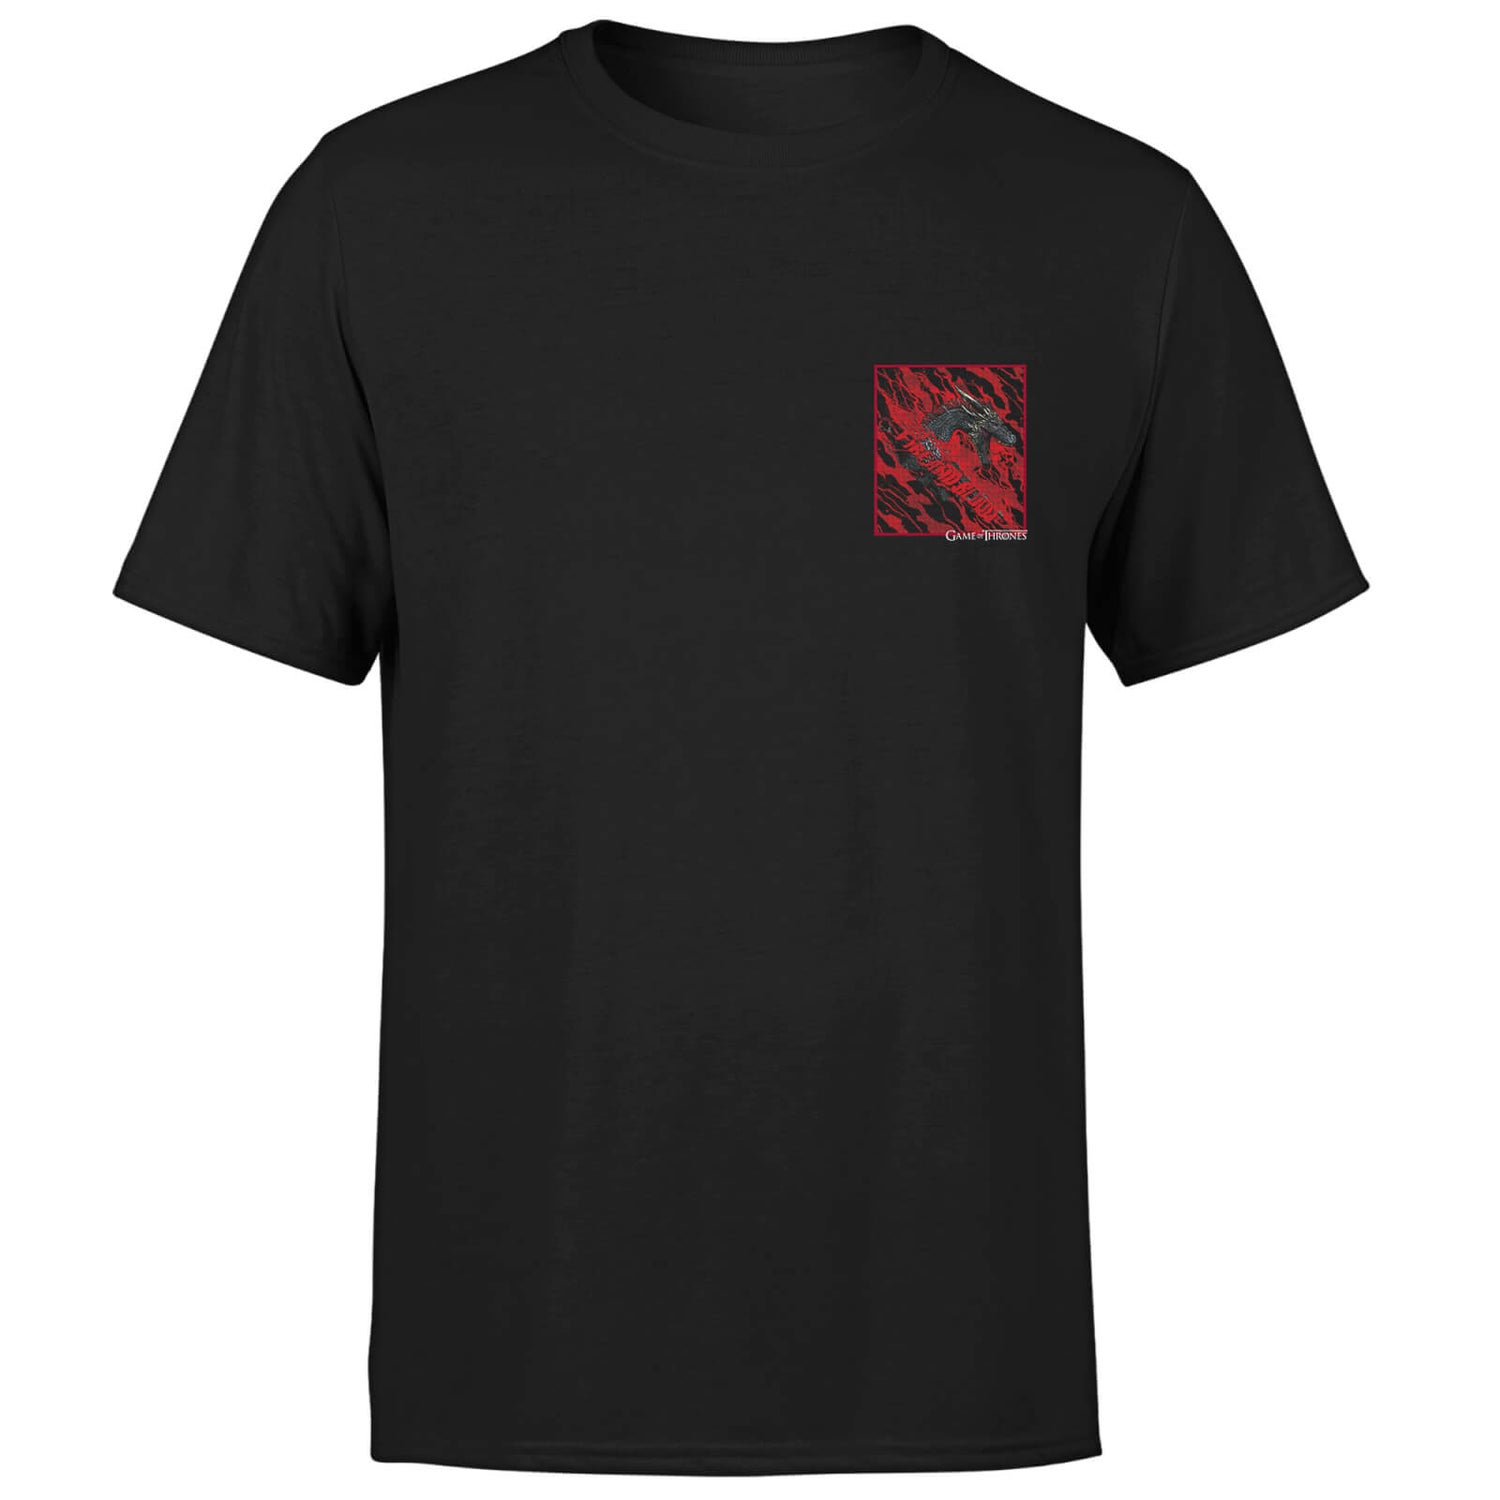 Camiseta Juego de Tronos Fuego y Sangre - Hombre - Negro